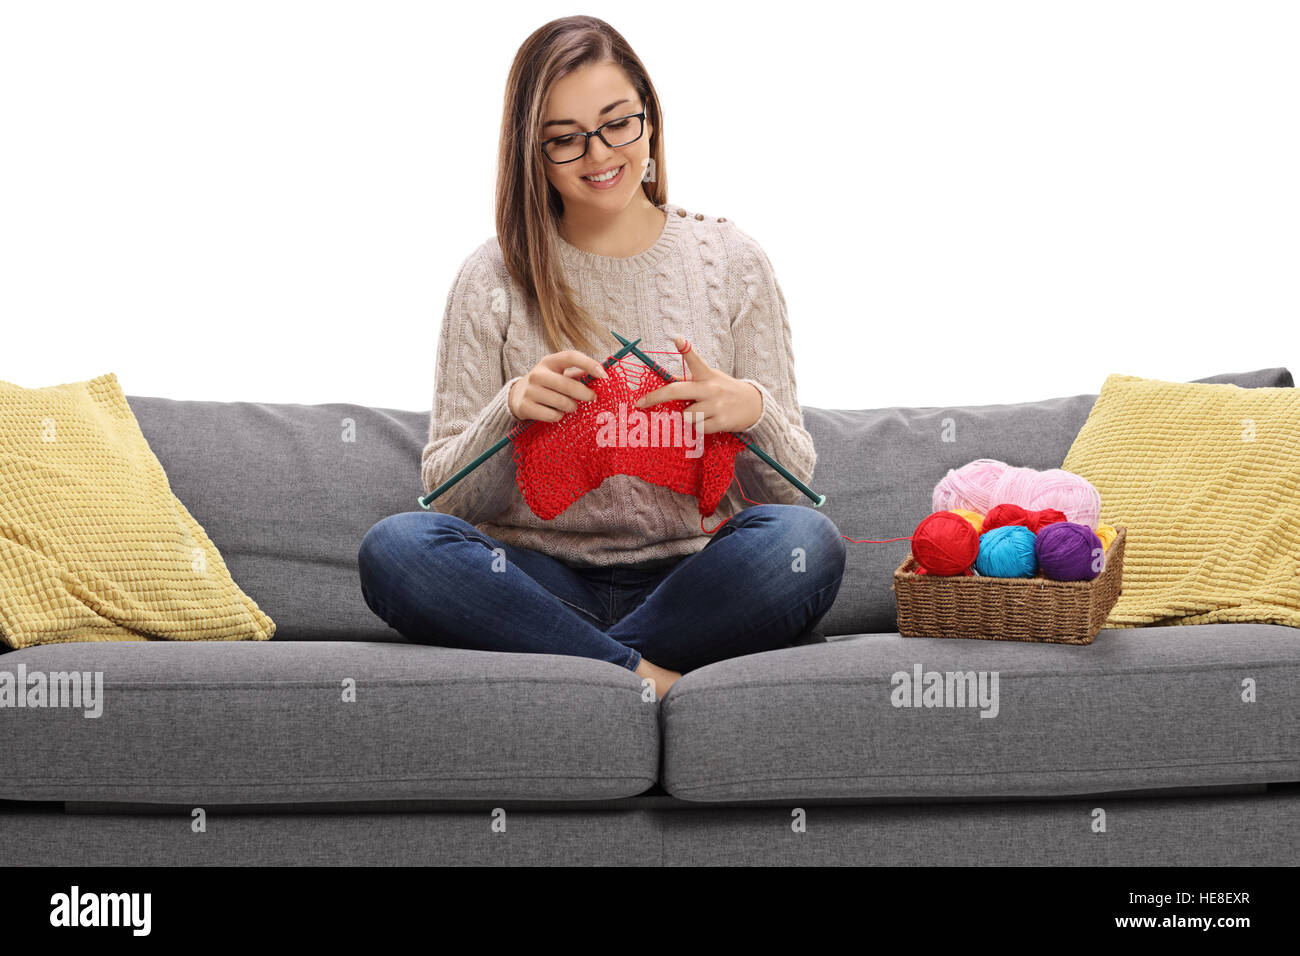 Glückliche junge Frau auf einem Sofa sitzen und stricken isolierten auf weißen Hintergrund Stockfoto